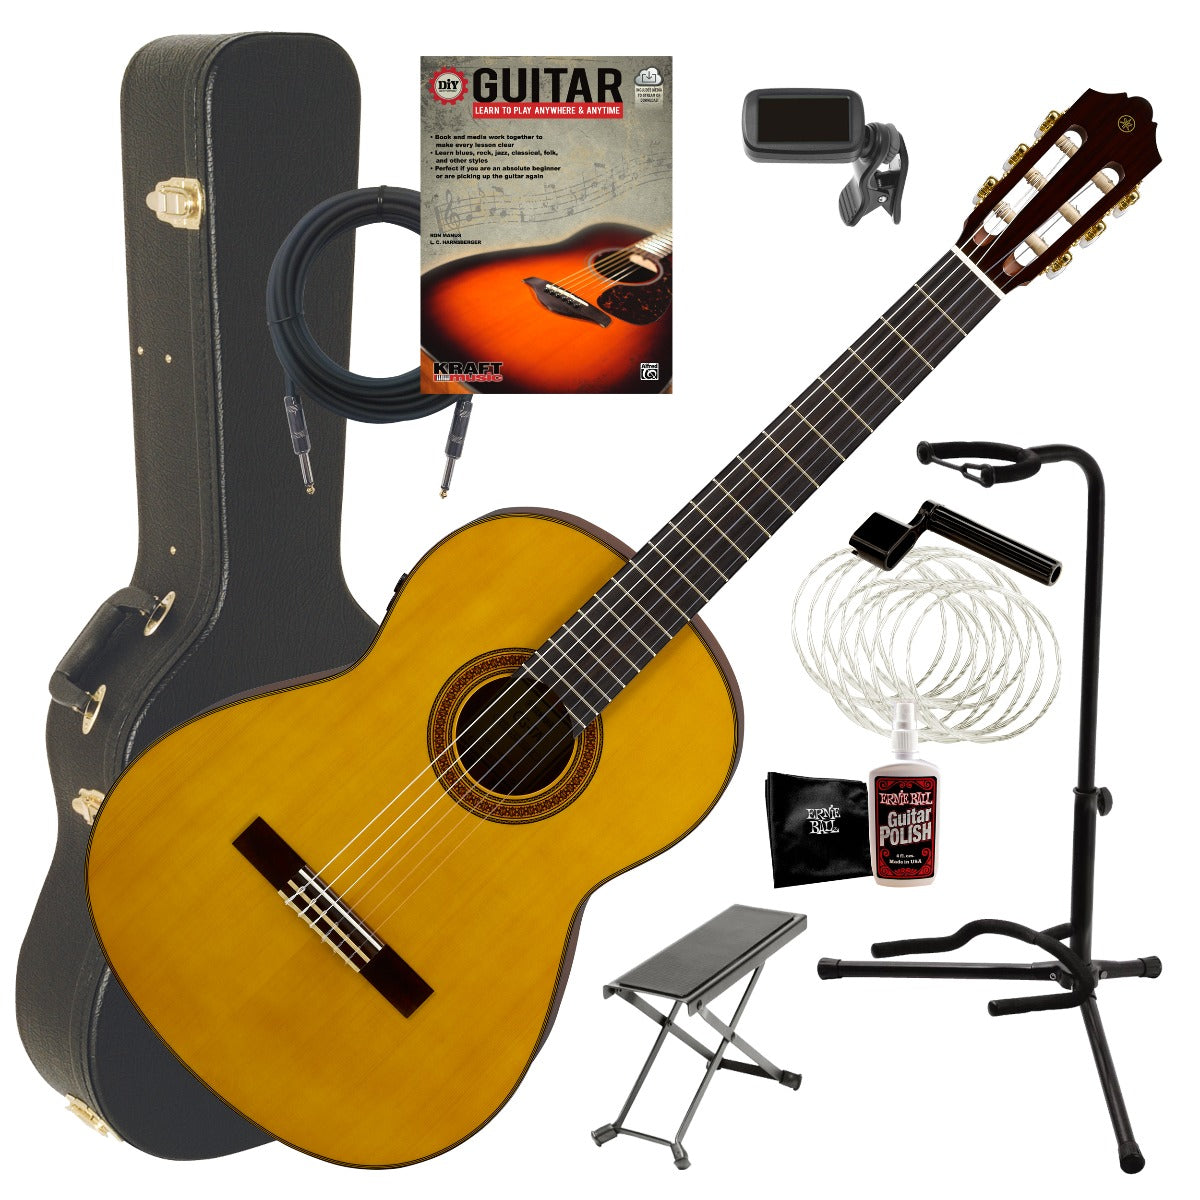 Yamaha CG-TA TransAcoustic Classical Guitar - Natural COMPLETE GUITAR BUNDLE